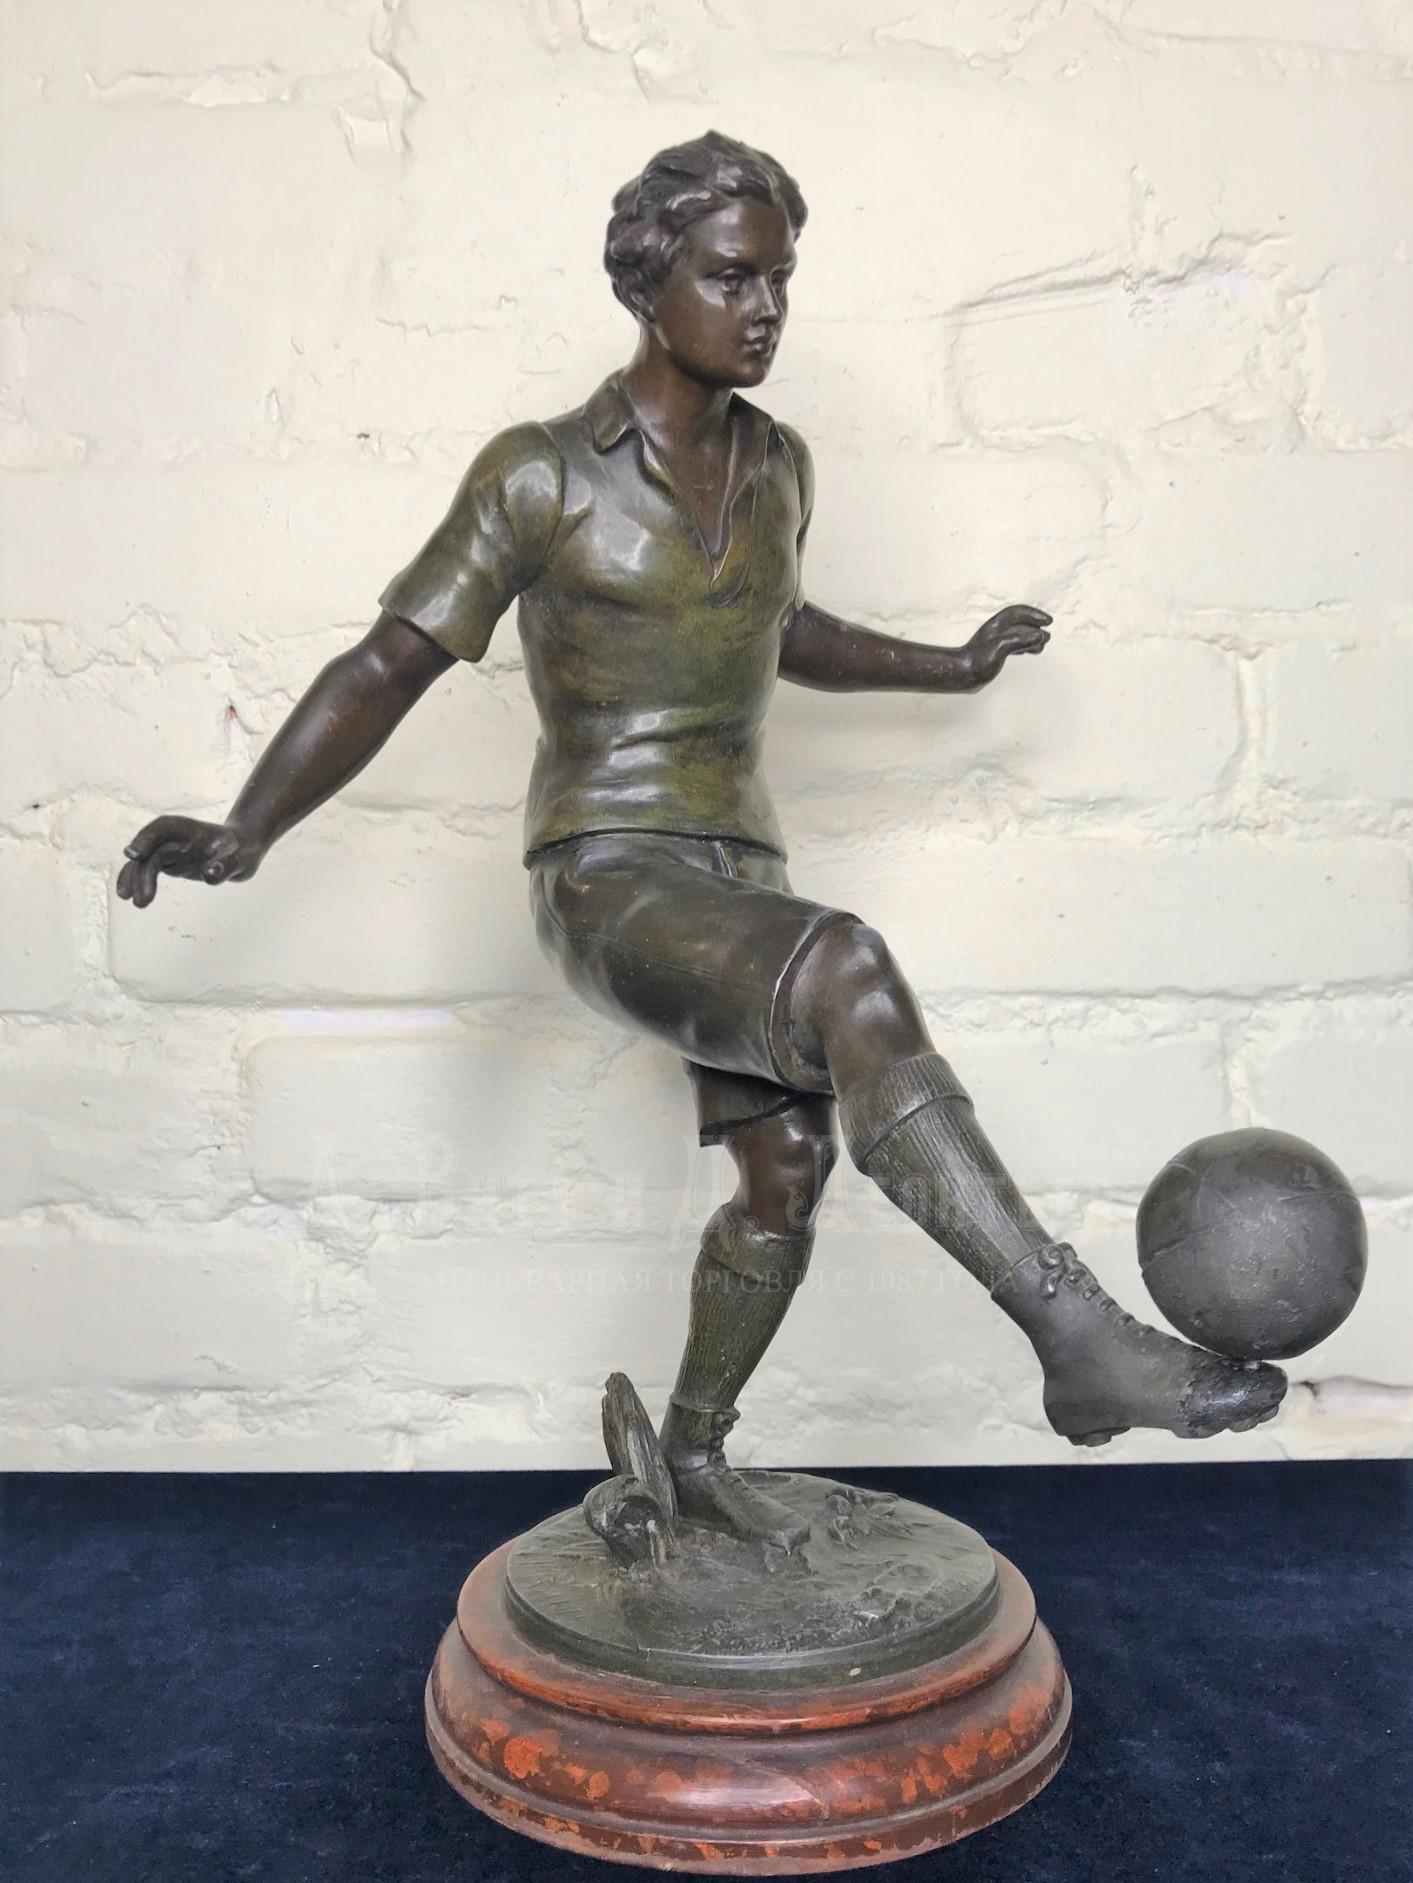 Футболист чеканит мяч скульптура спортивная